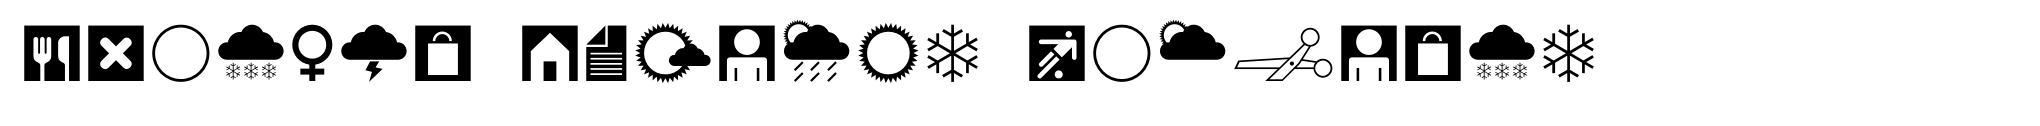 Leitura Symbols Dingbats image